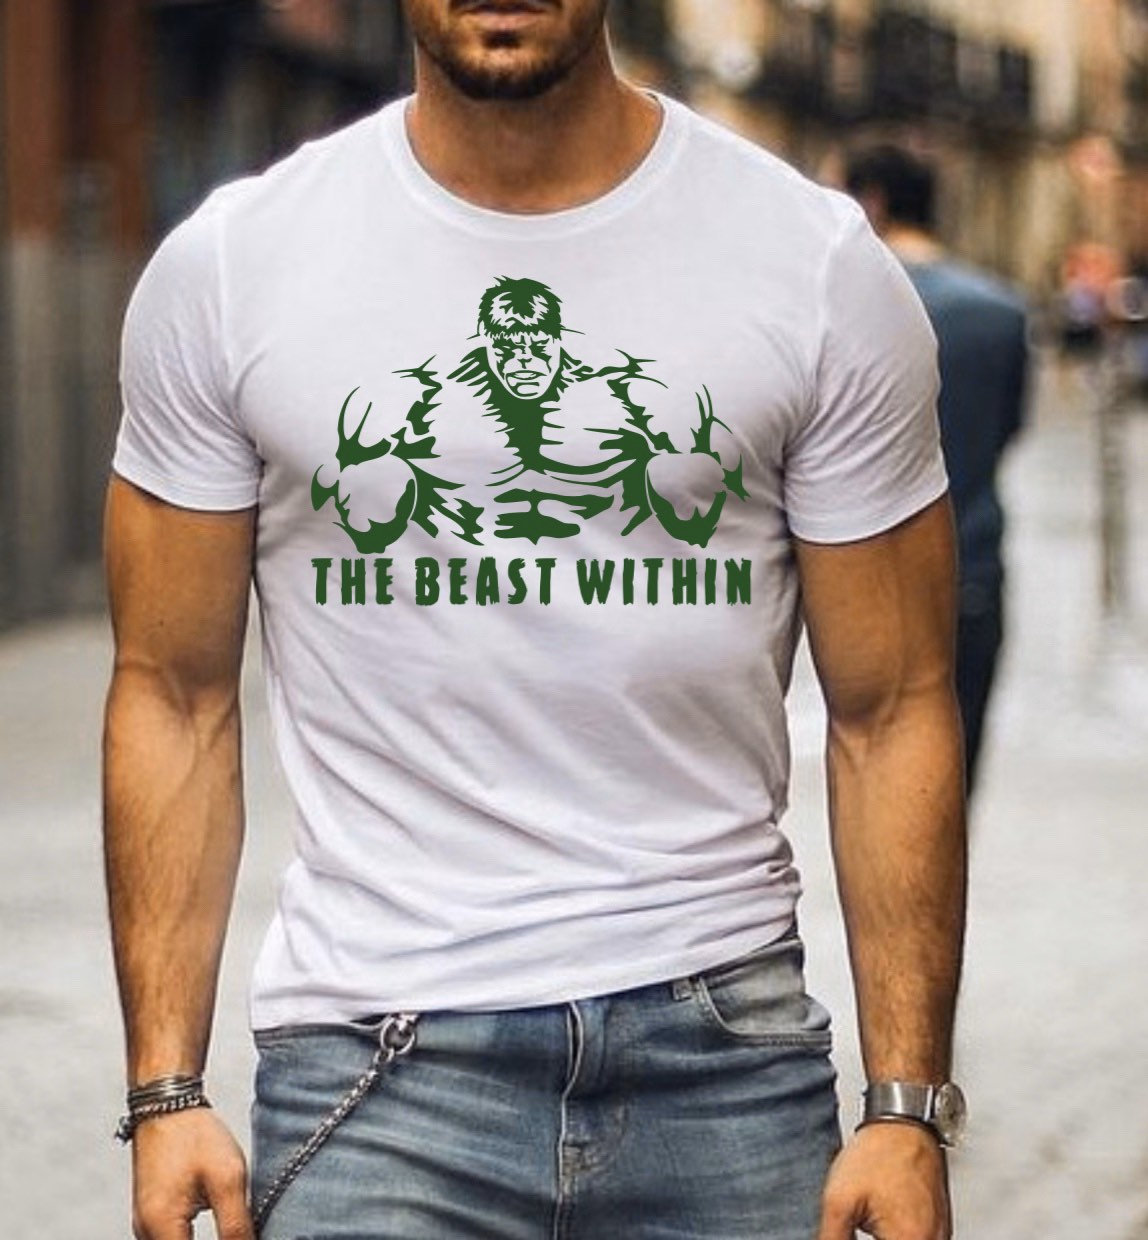 stivhed mulighed frakobling Bodybuilding T Shirt - Buy Online - Etsy